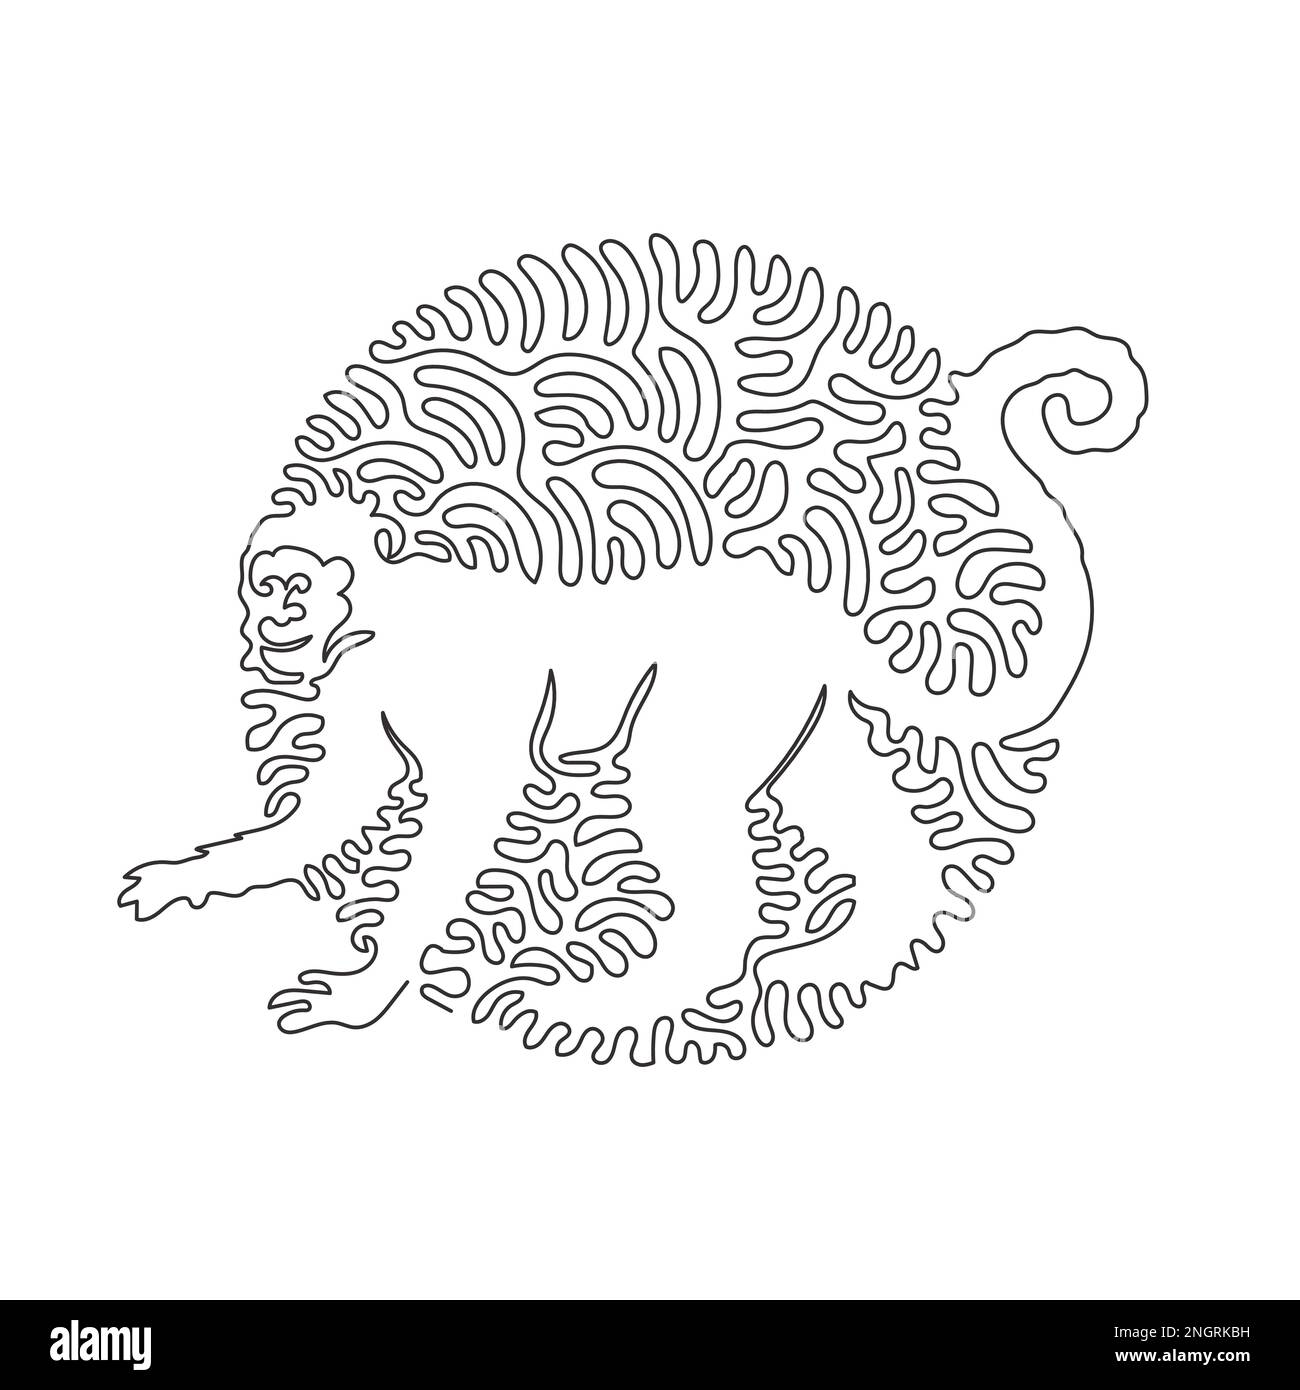 Eine einzelne geschwungene Zeichnung mit einer Linie süßer abstrakter Affen-Kunst. Grafische Vektordarstellungen von Affen mit durchgehenden Linien sind äußerst intelligent Stock Vektor